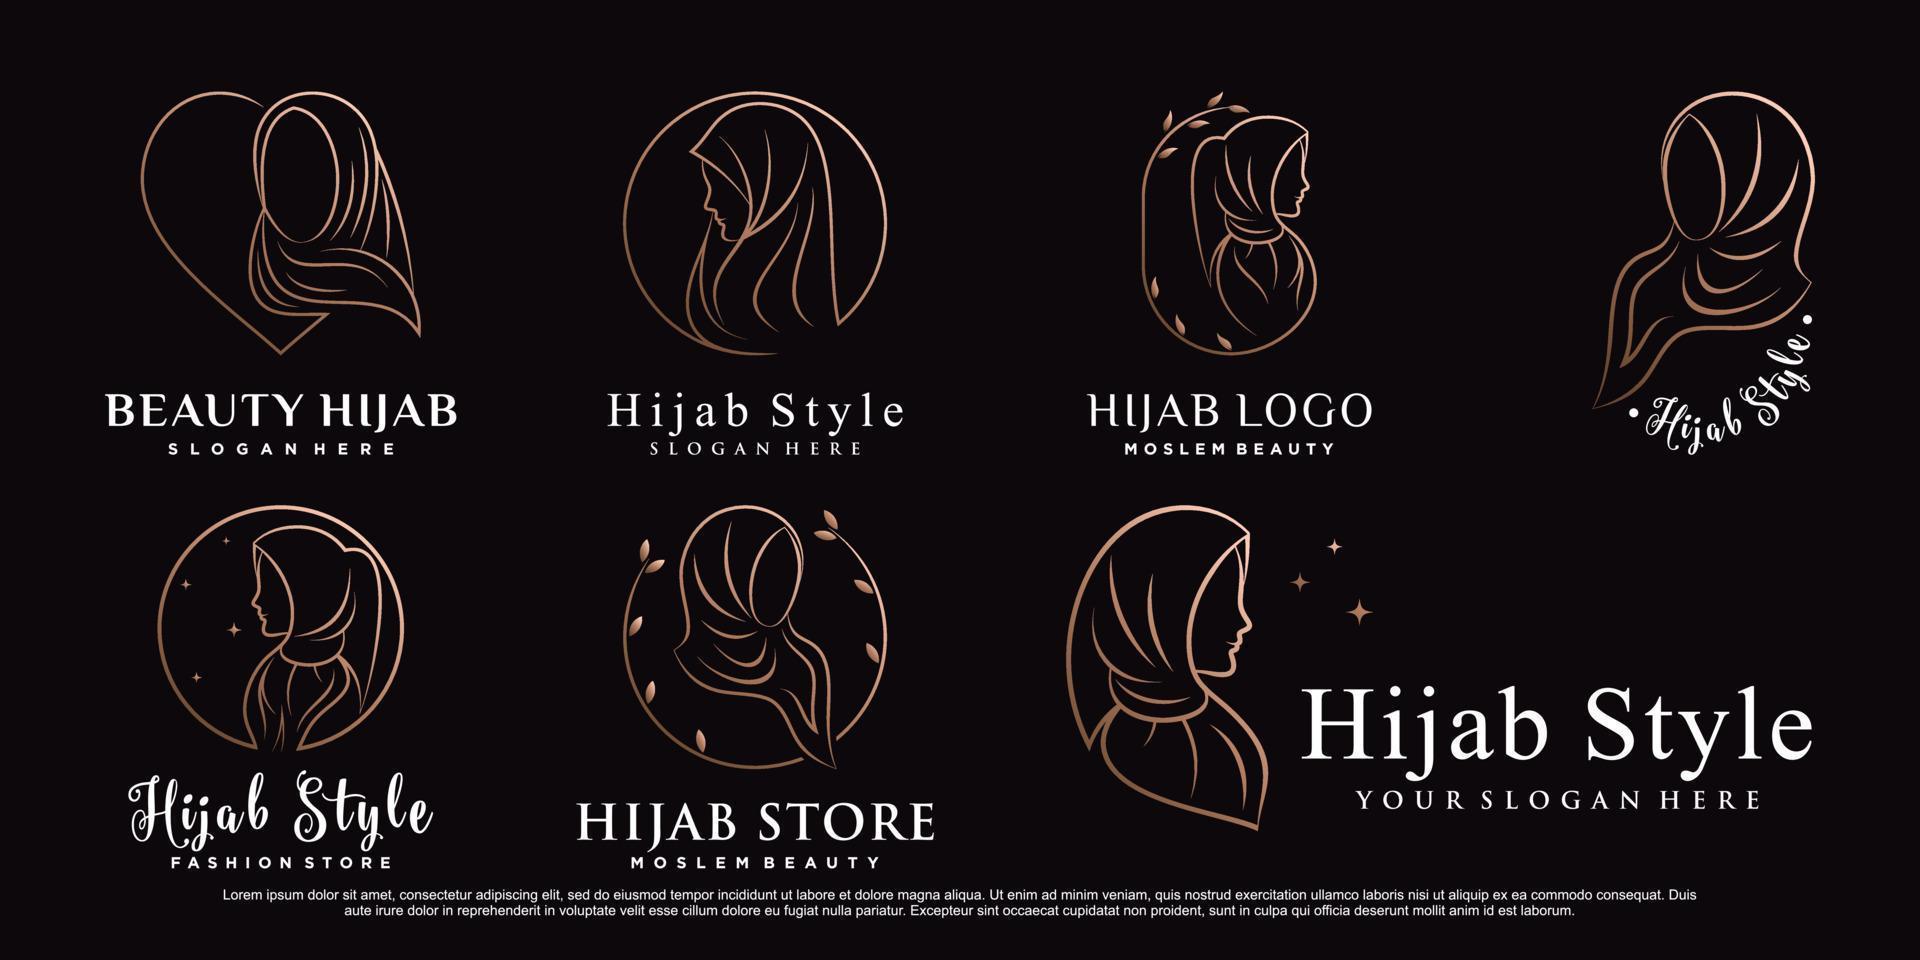 conjunto de modelo de design de logotipo hijab com estilo de arte de linha e vetor premium de elemento criativo